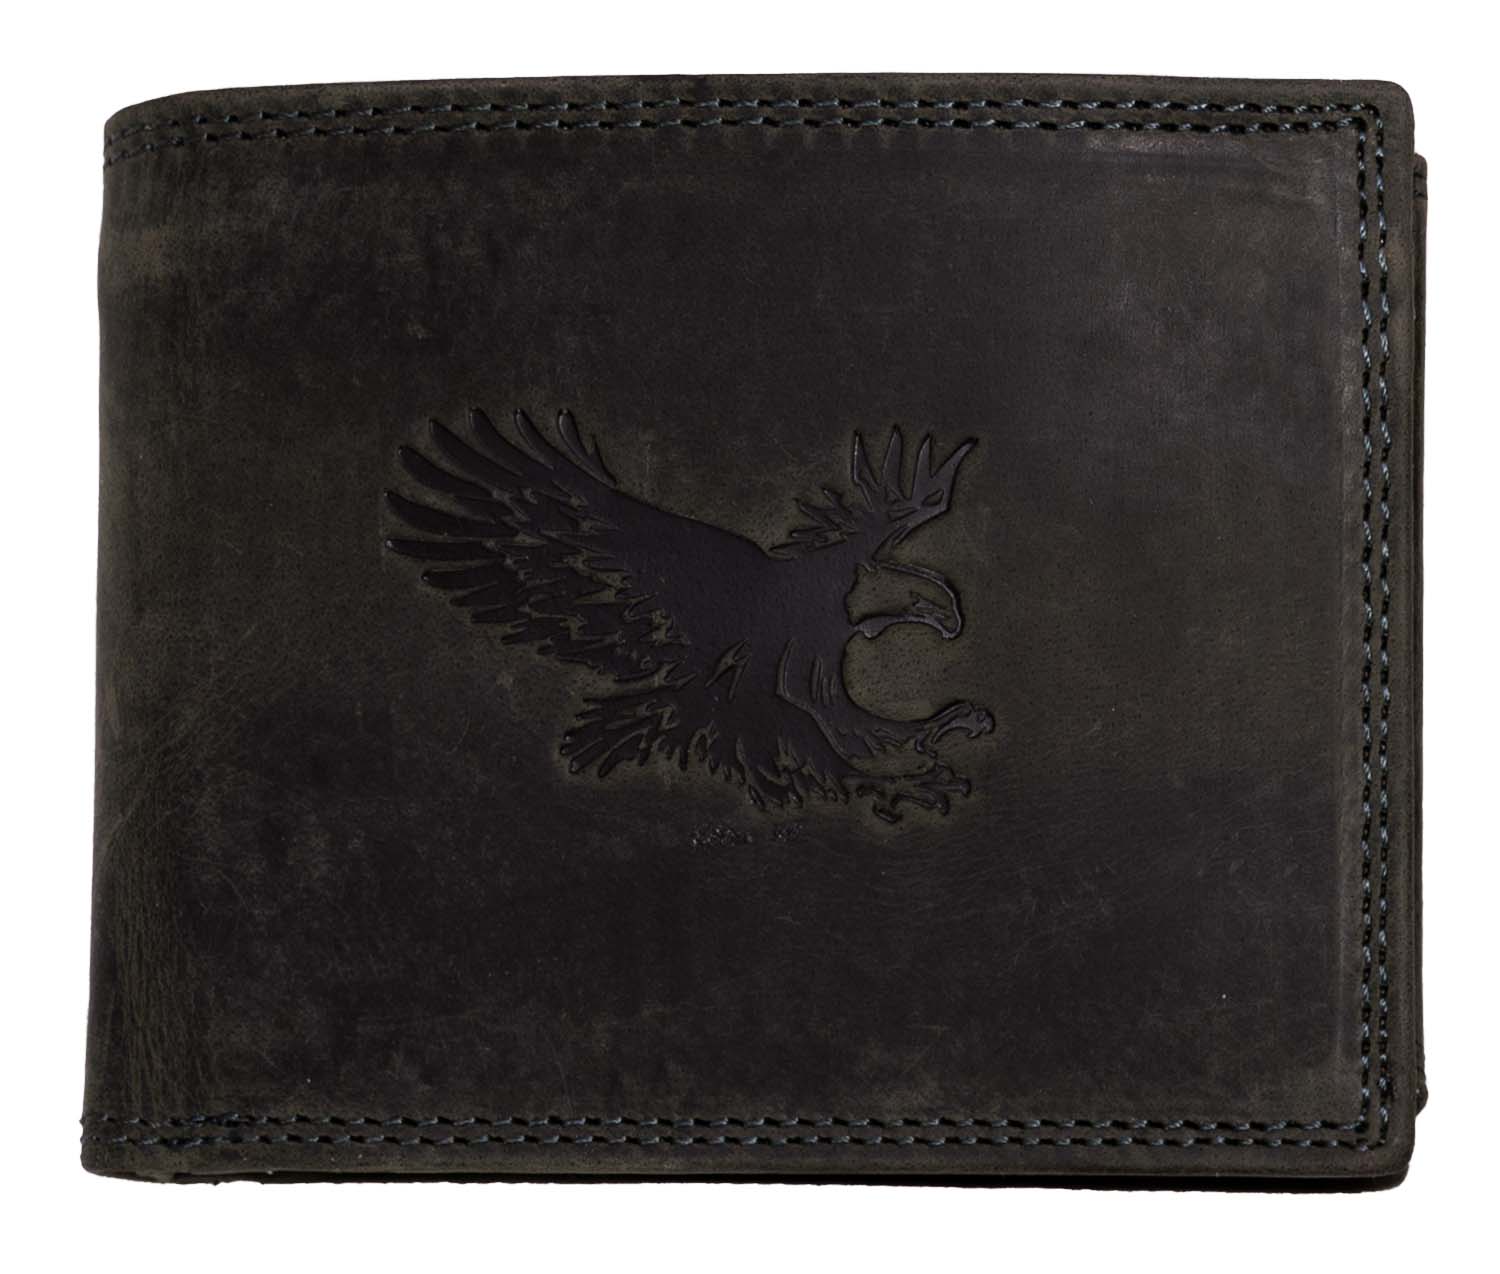 E-shop HL Luxusná kožená peňaženka s orlom - čierna